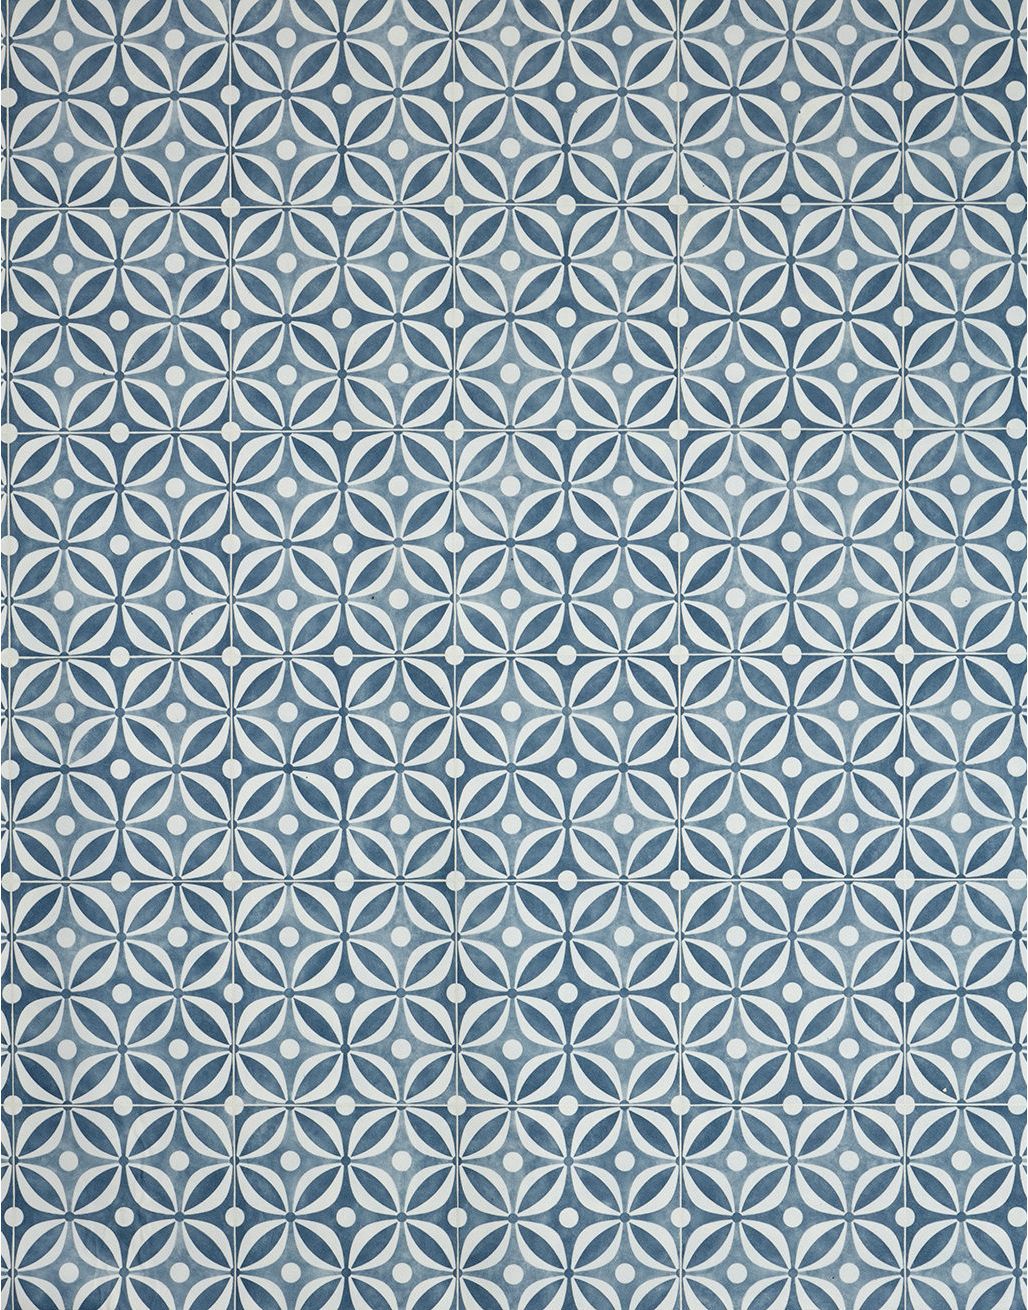 Patterned Tiles - Cerulean Links 3